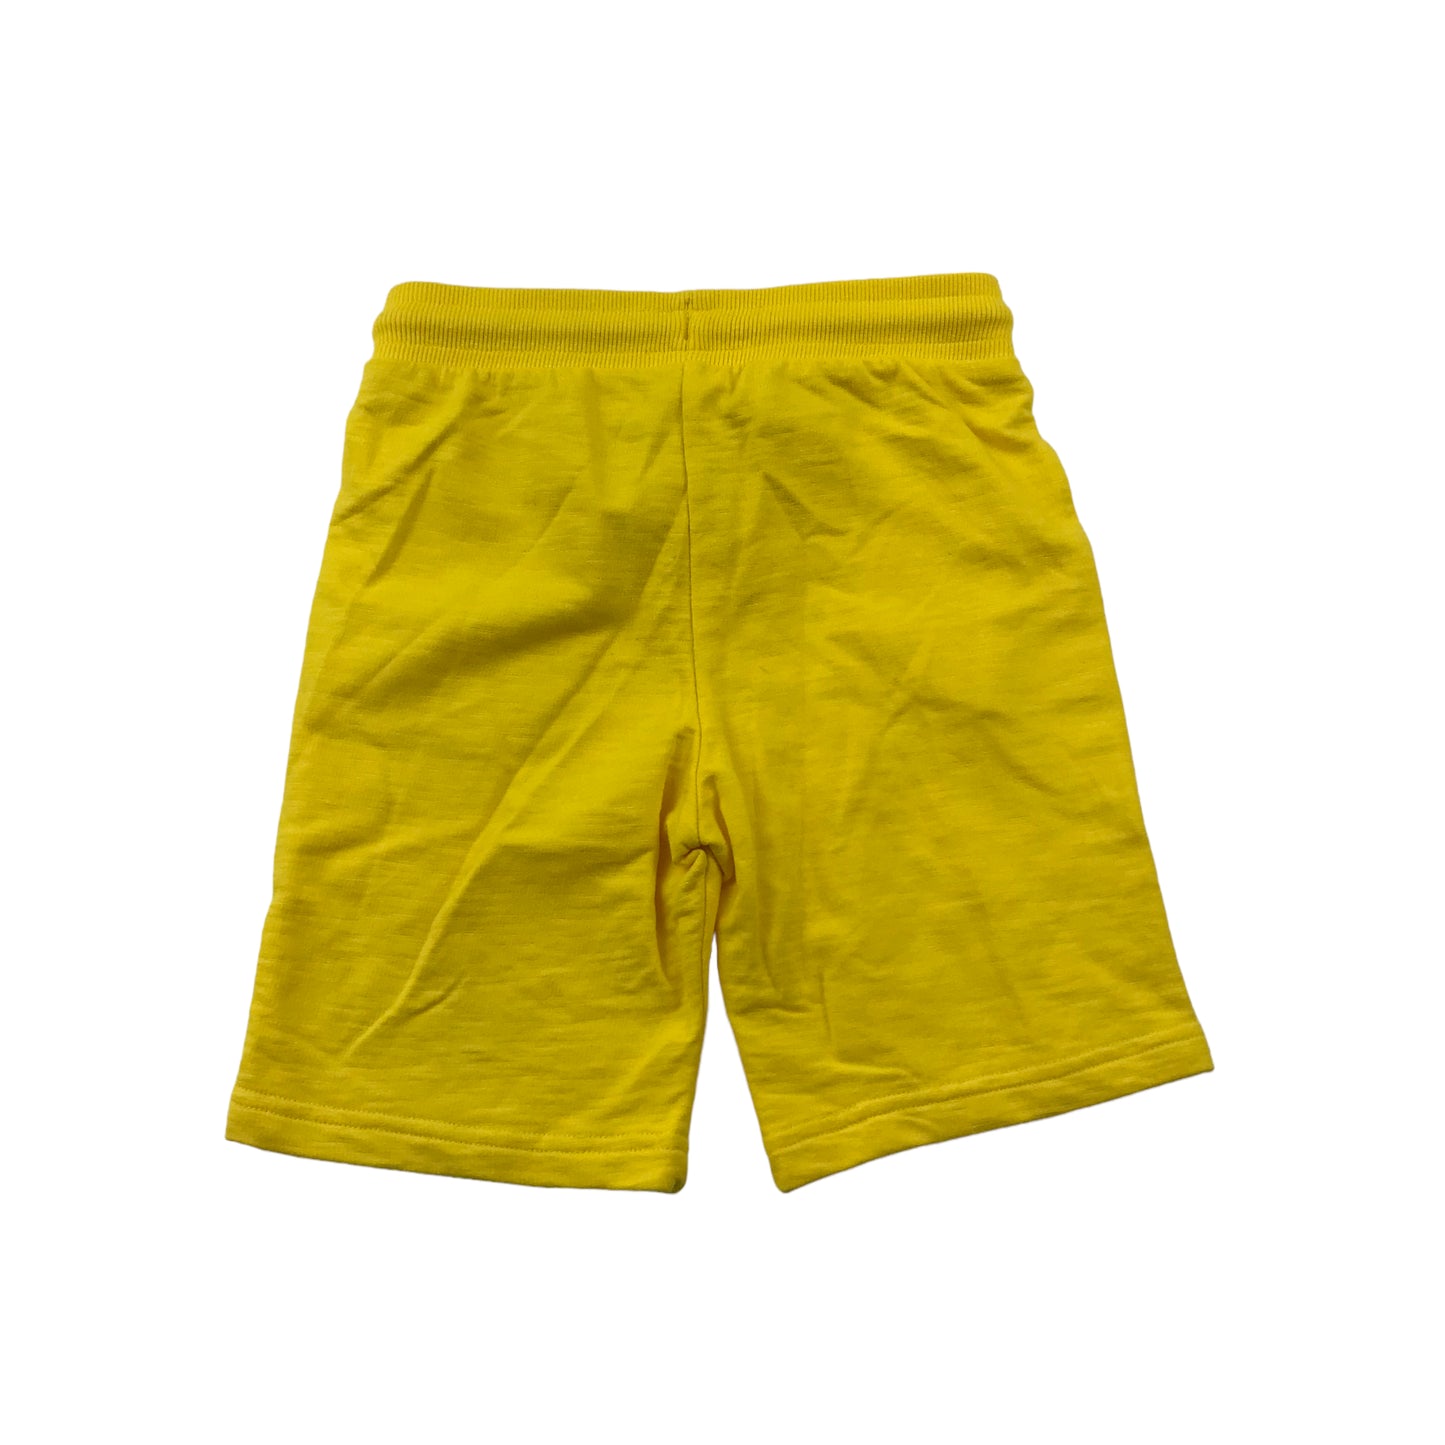 F&F Bright Yellow Batman Jersey Shorts Age 5